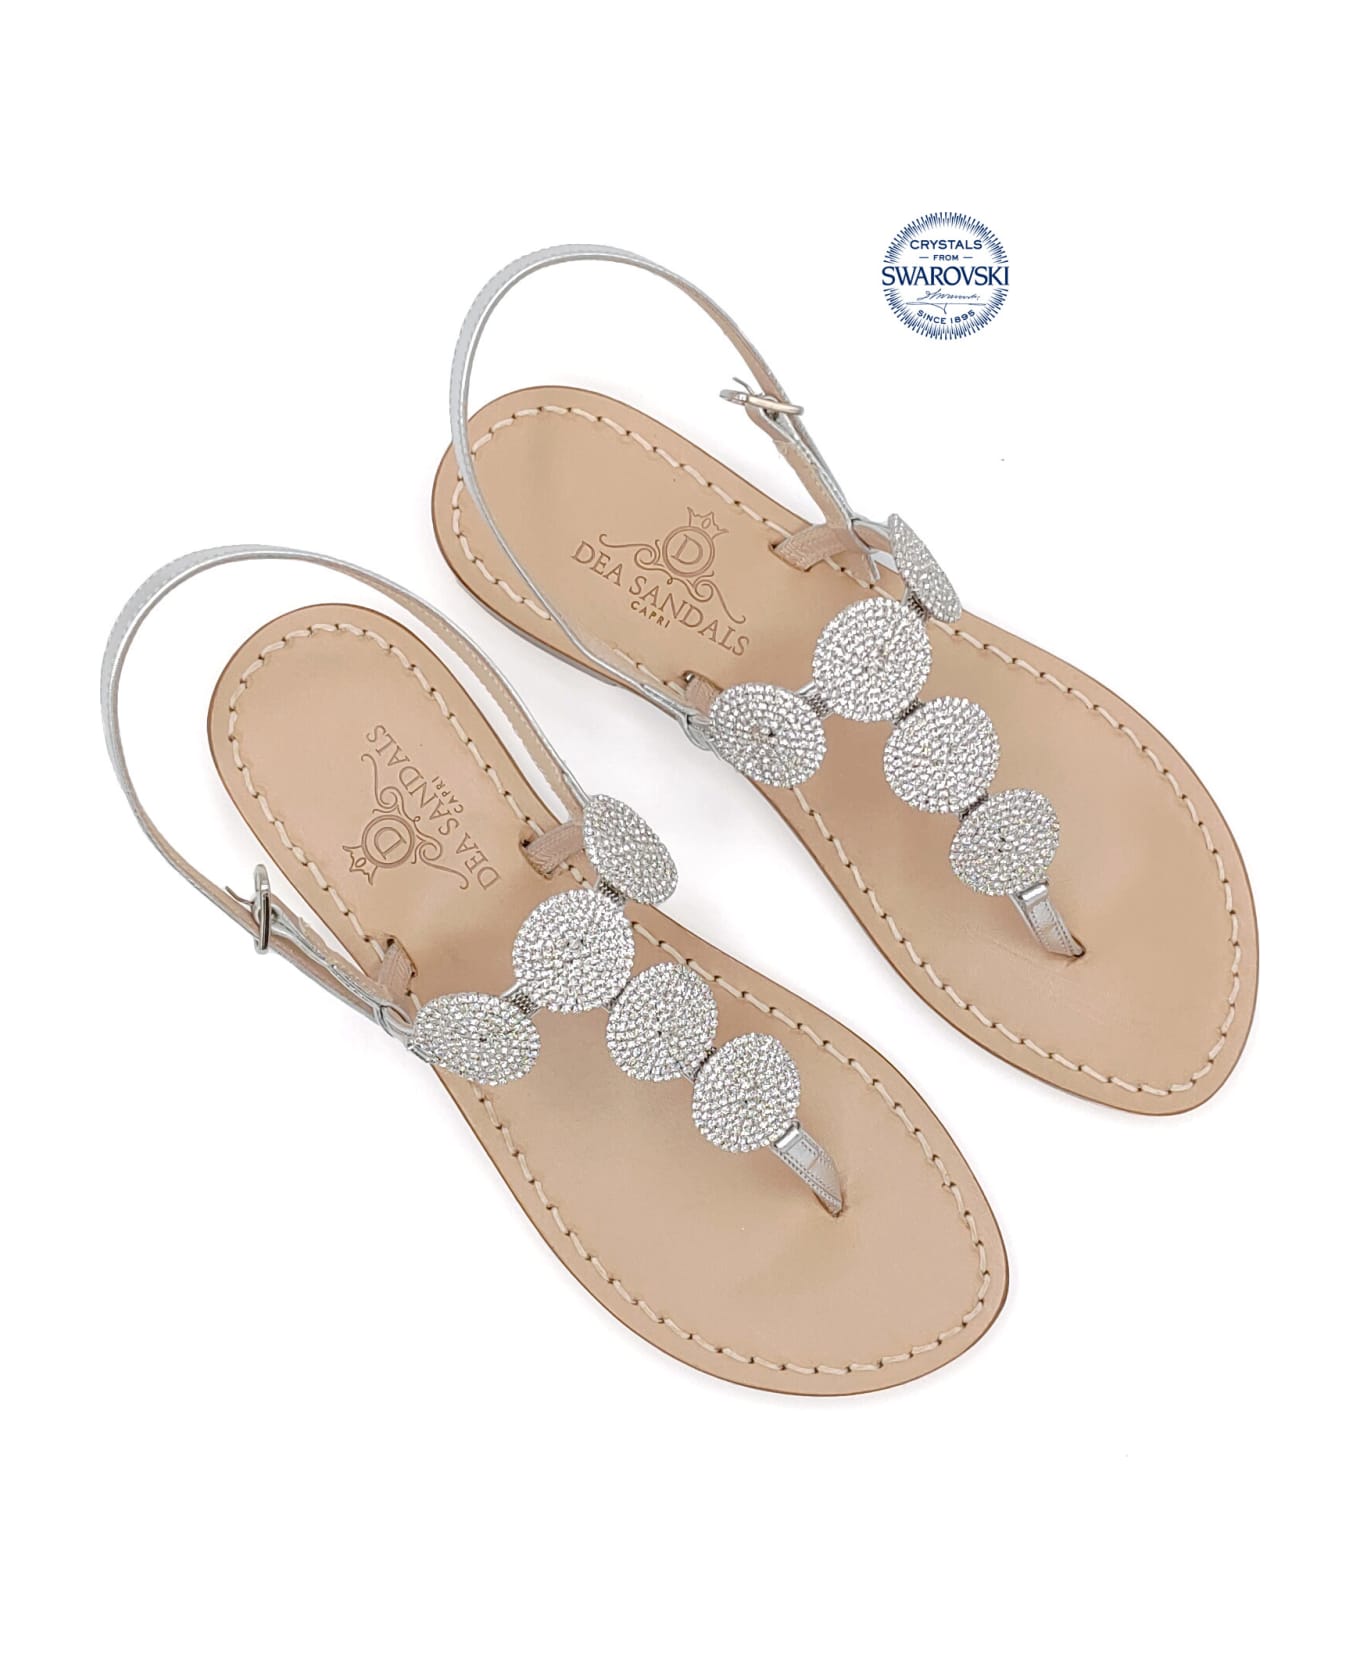 Dea Sandals Fari Di Capri 5c Jewel Thong Sandals - silver, natural crystal